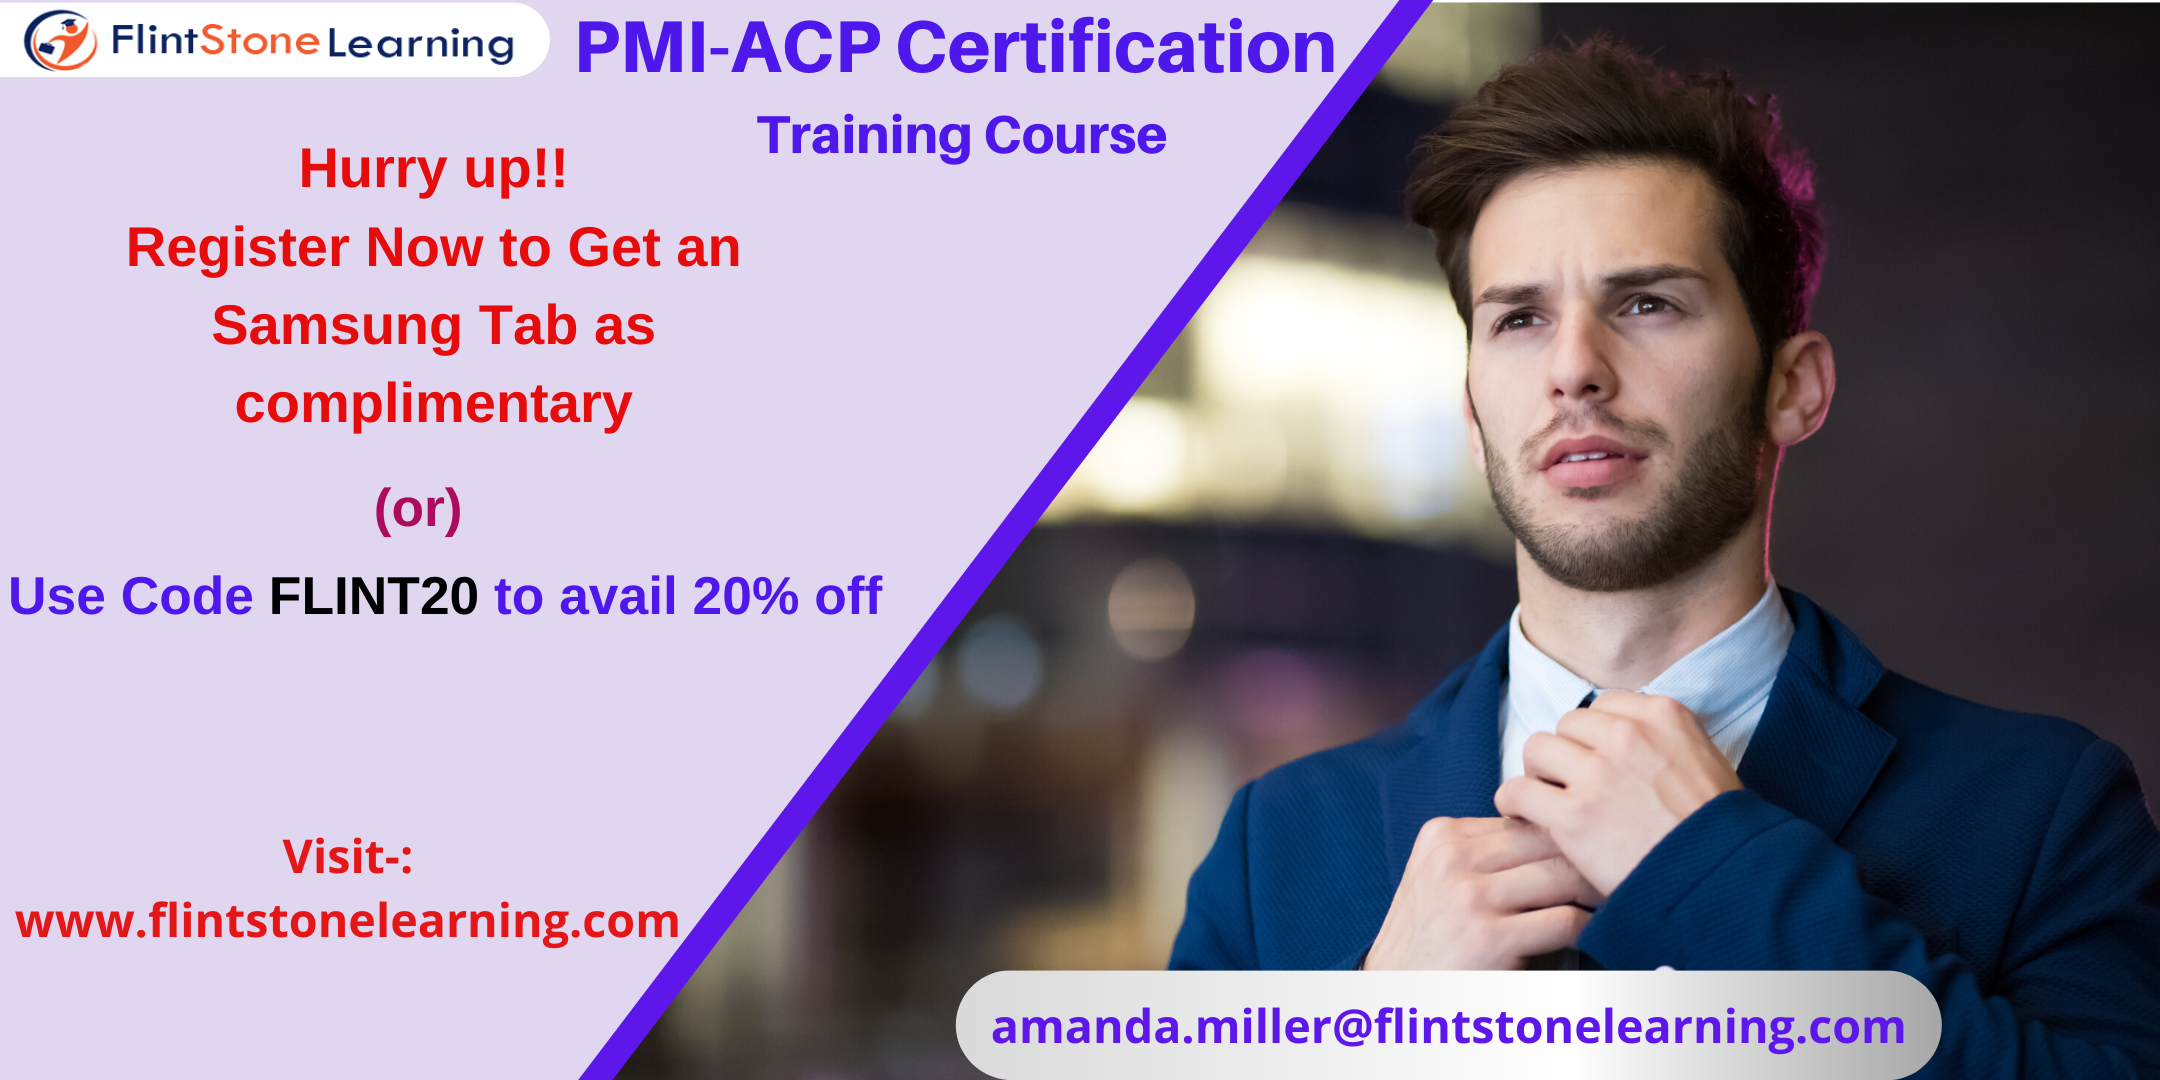 PMI-ACP Certification Training Course in Encinitas, CA